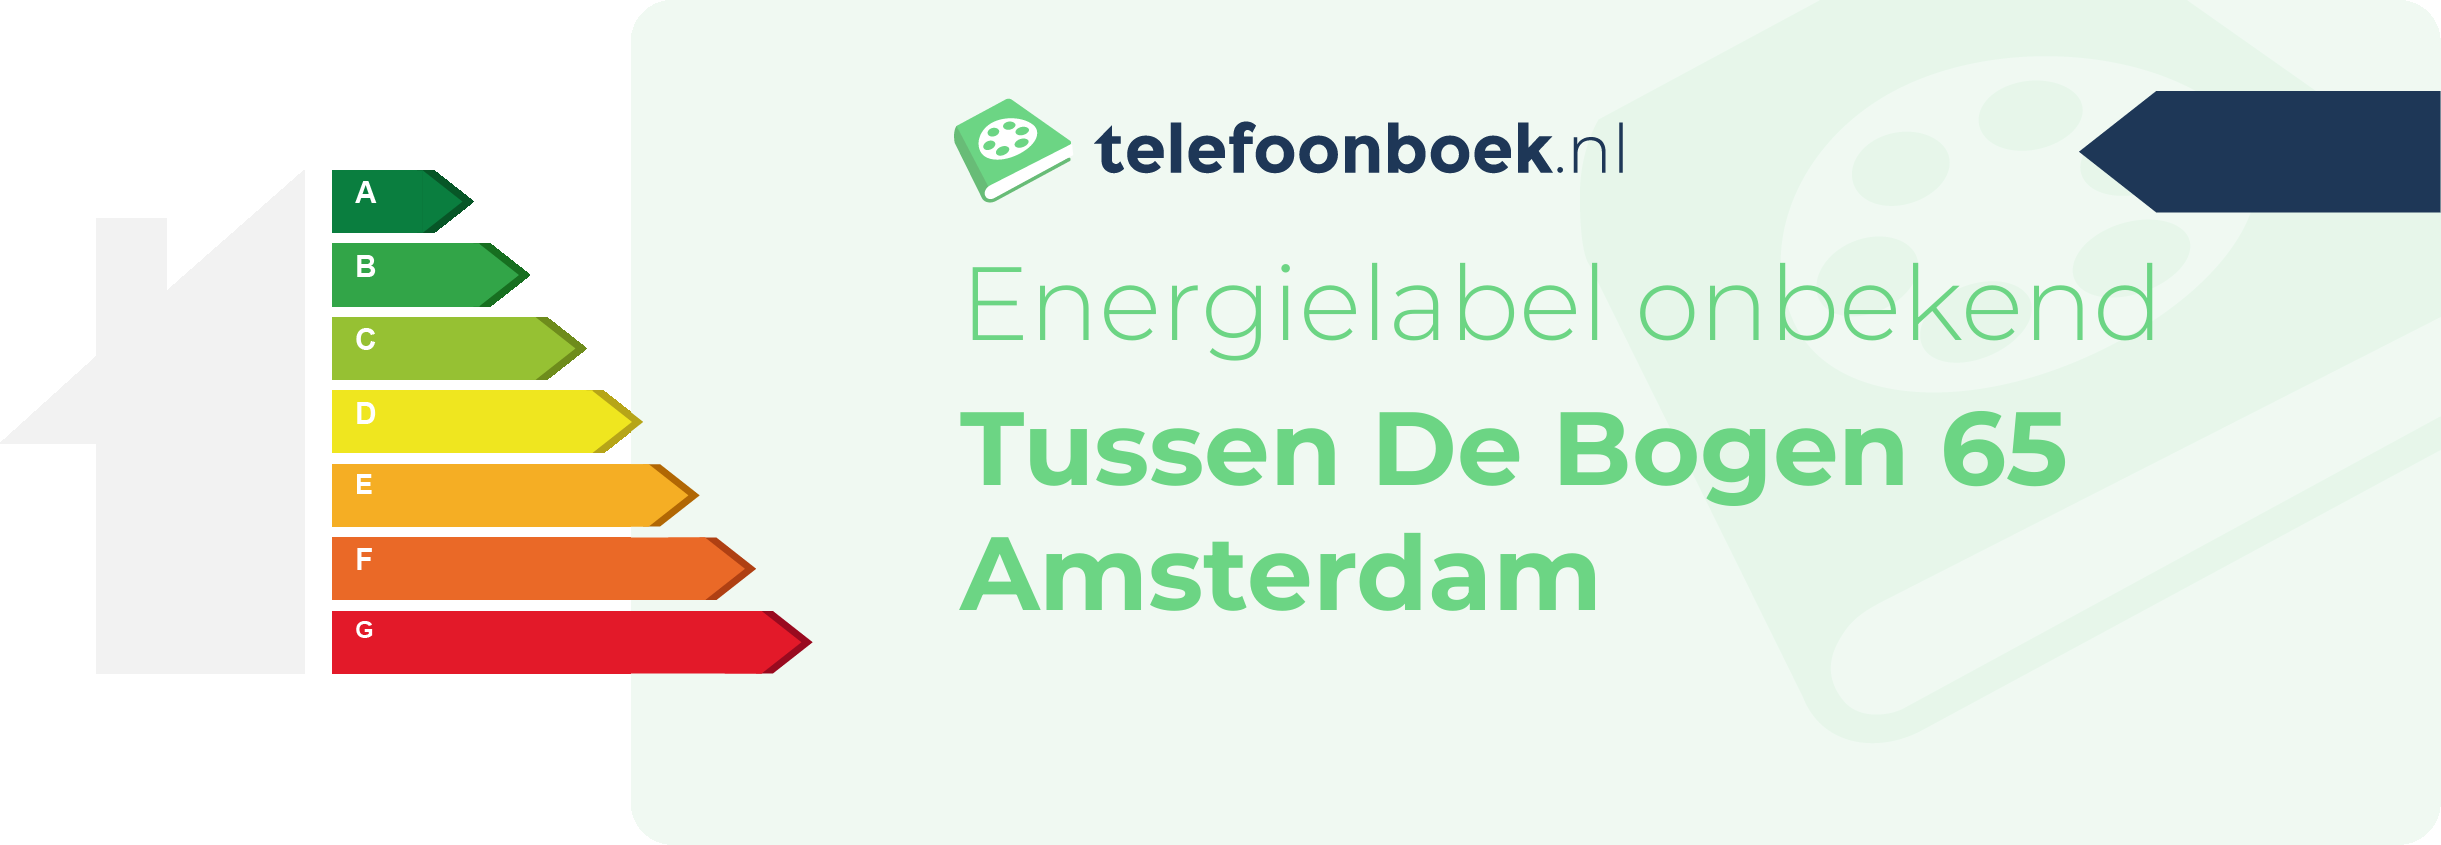 Energielabel Tussen De Bogen 65 Amsterdam